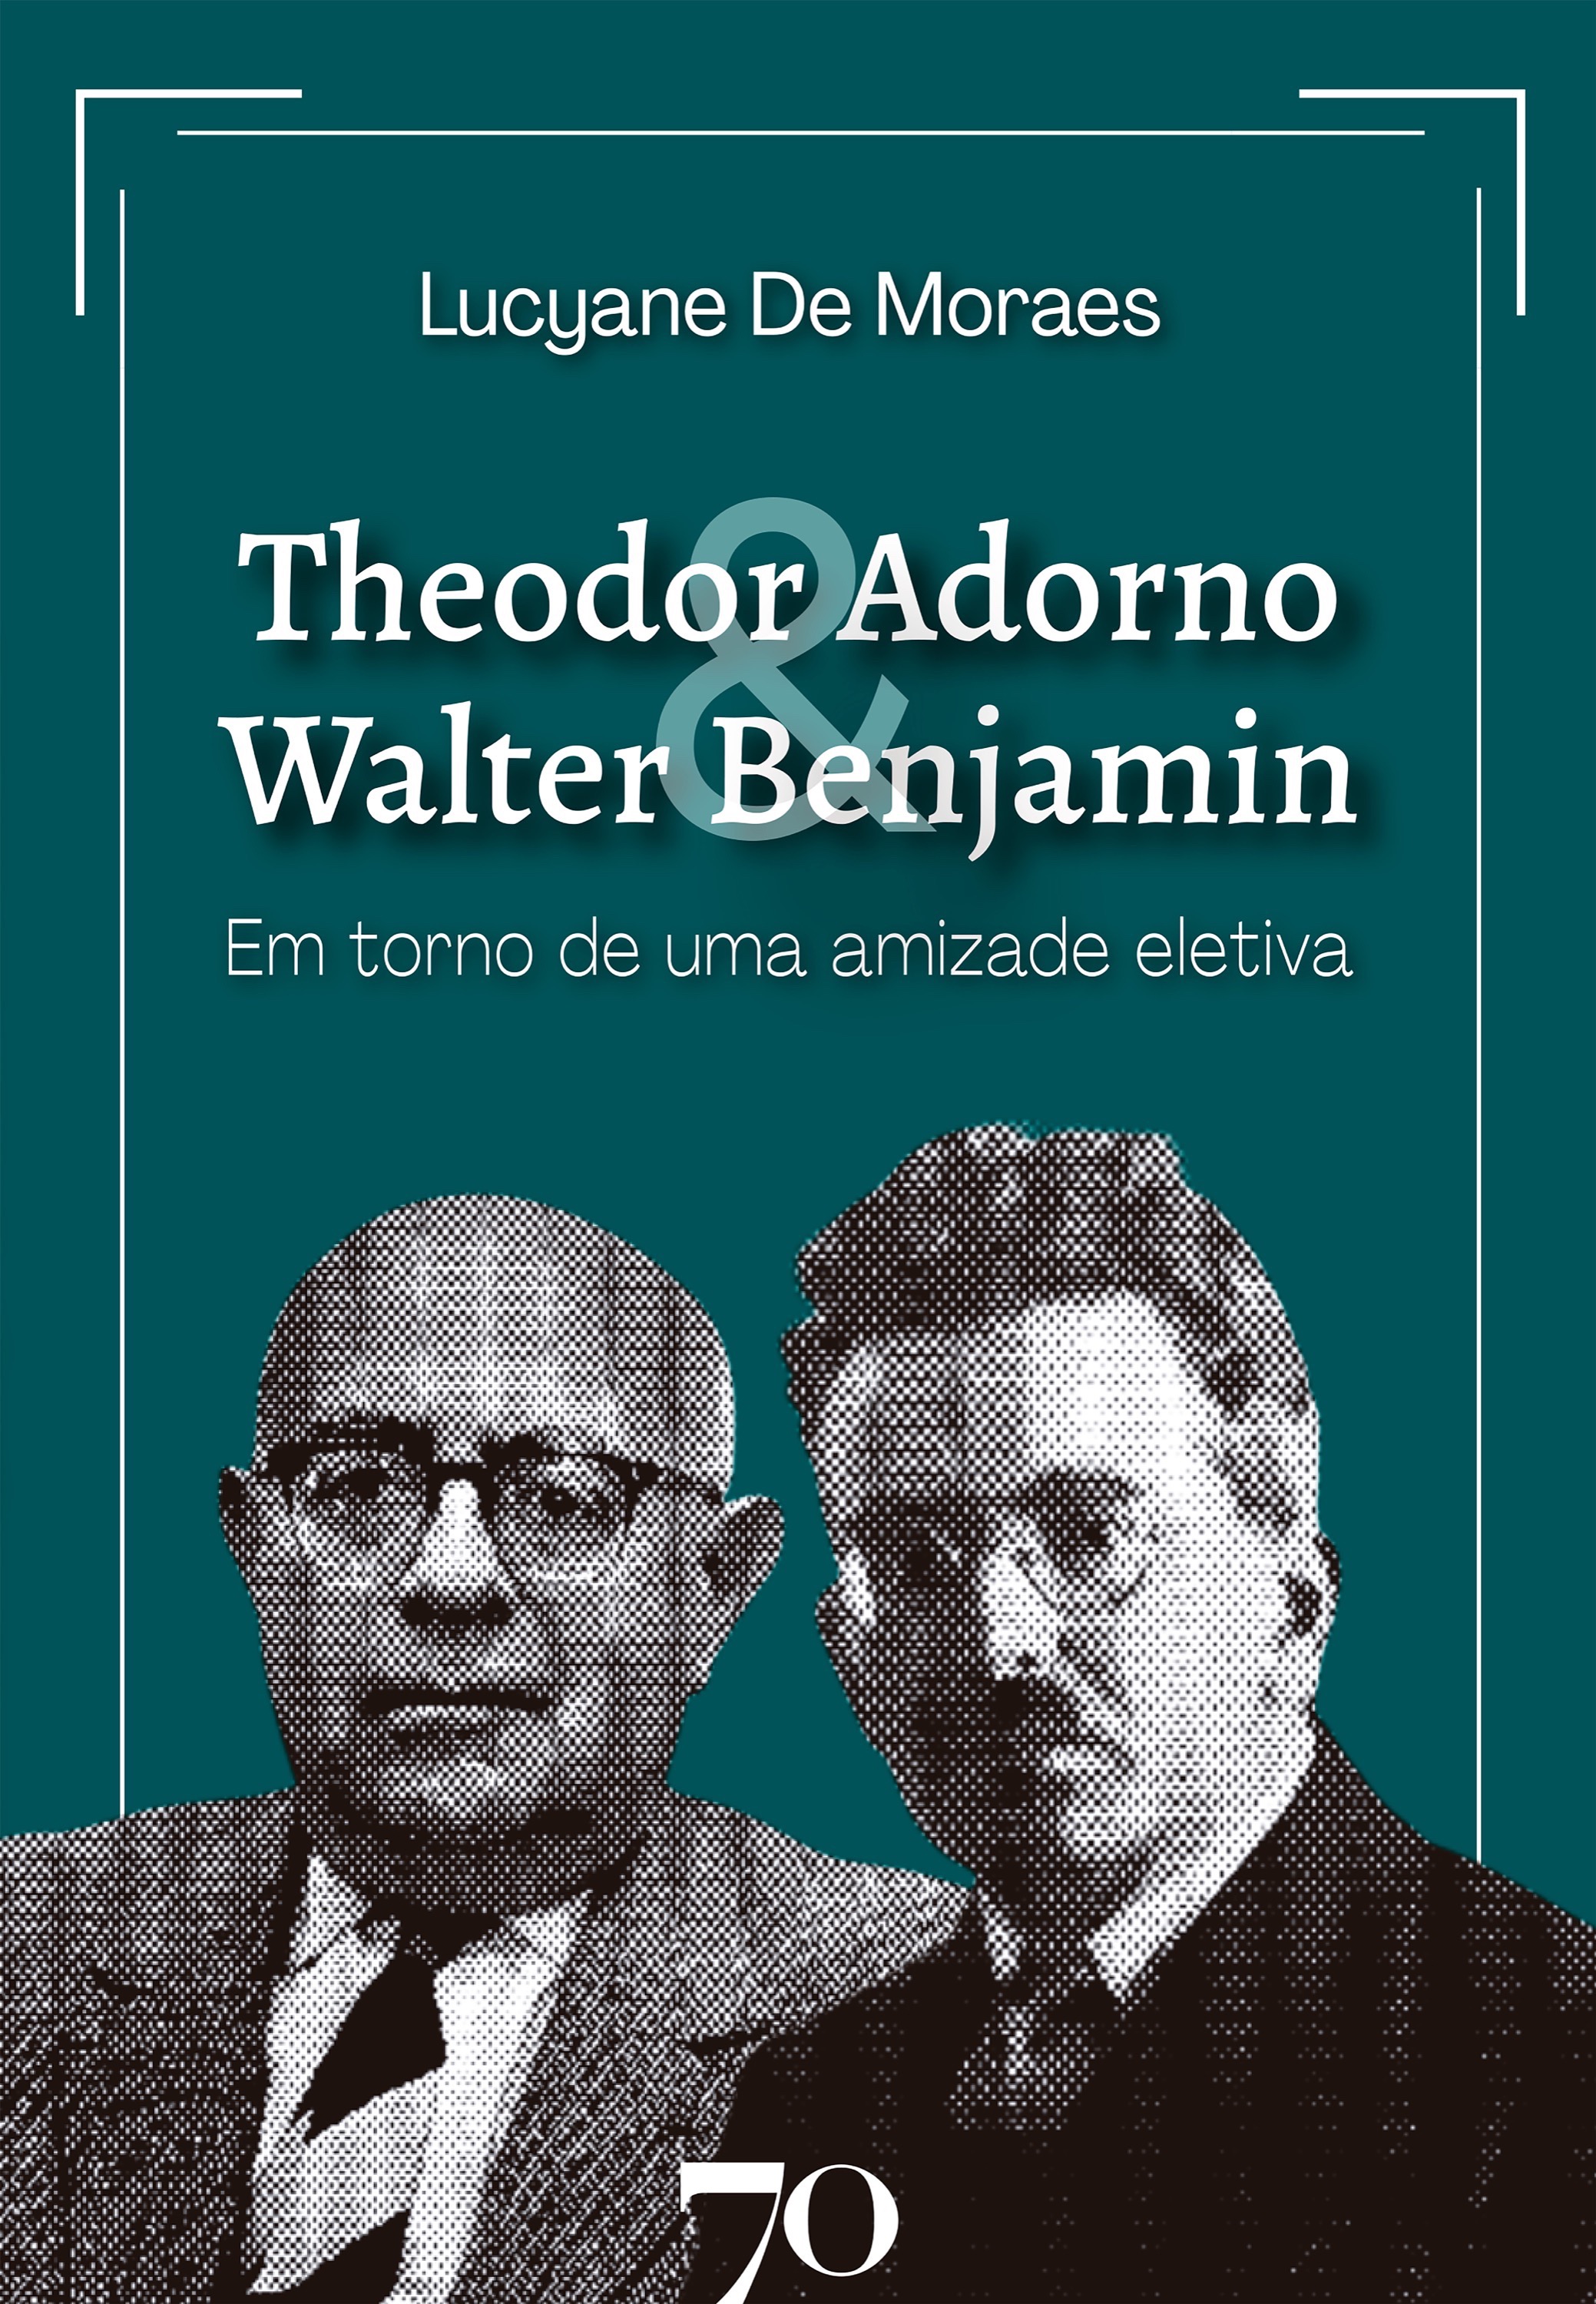 Theodor Adorno & Walter Benjamin